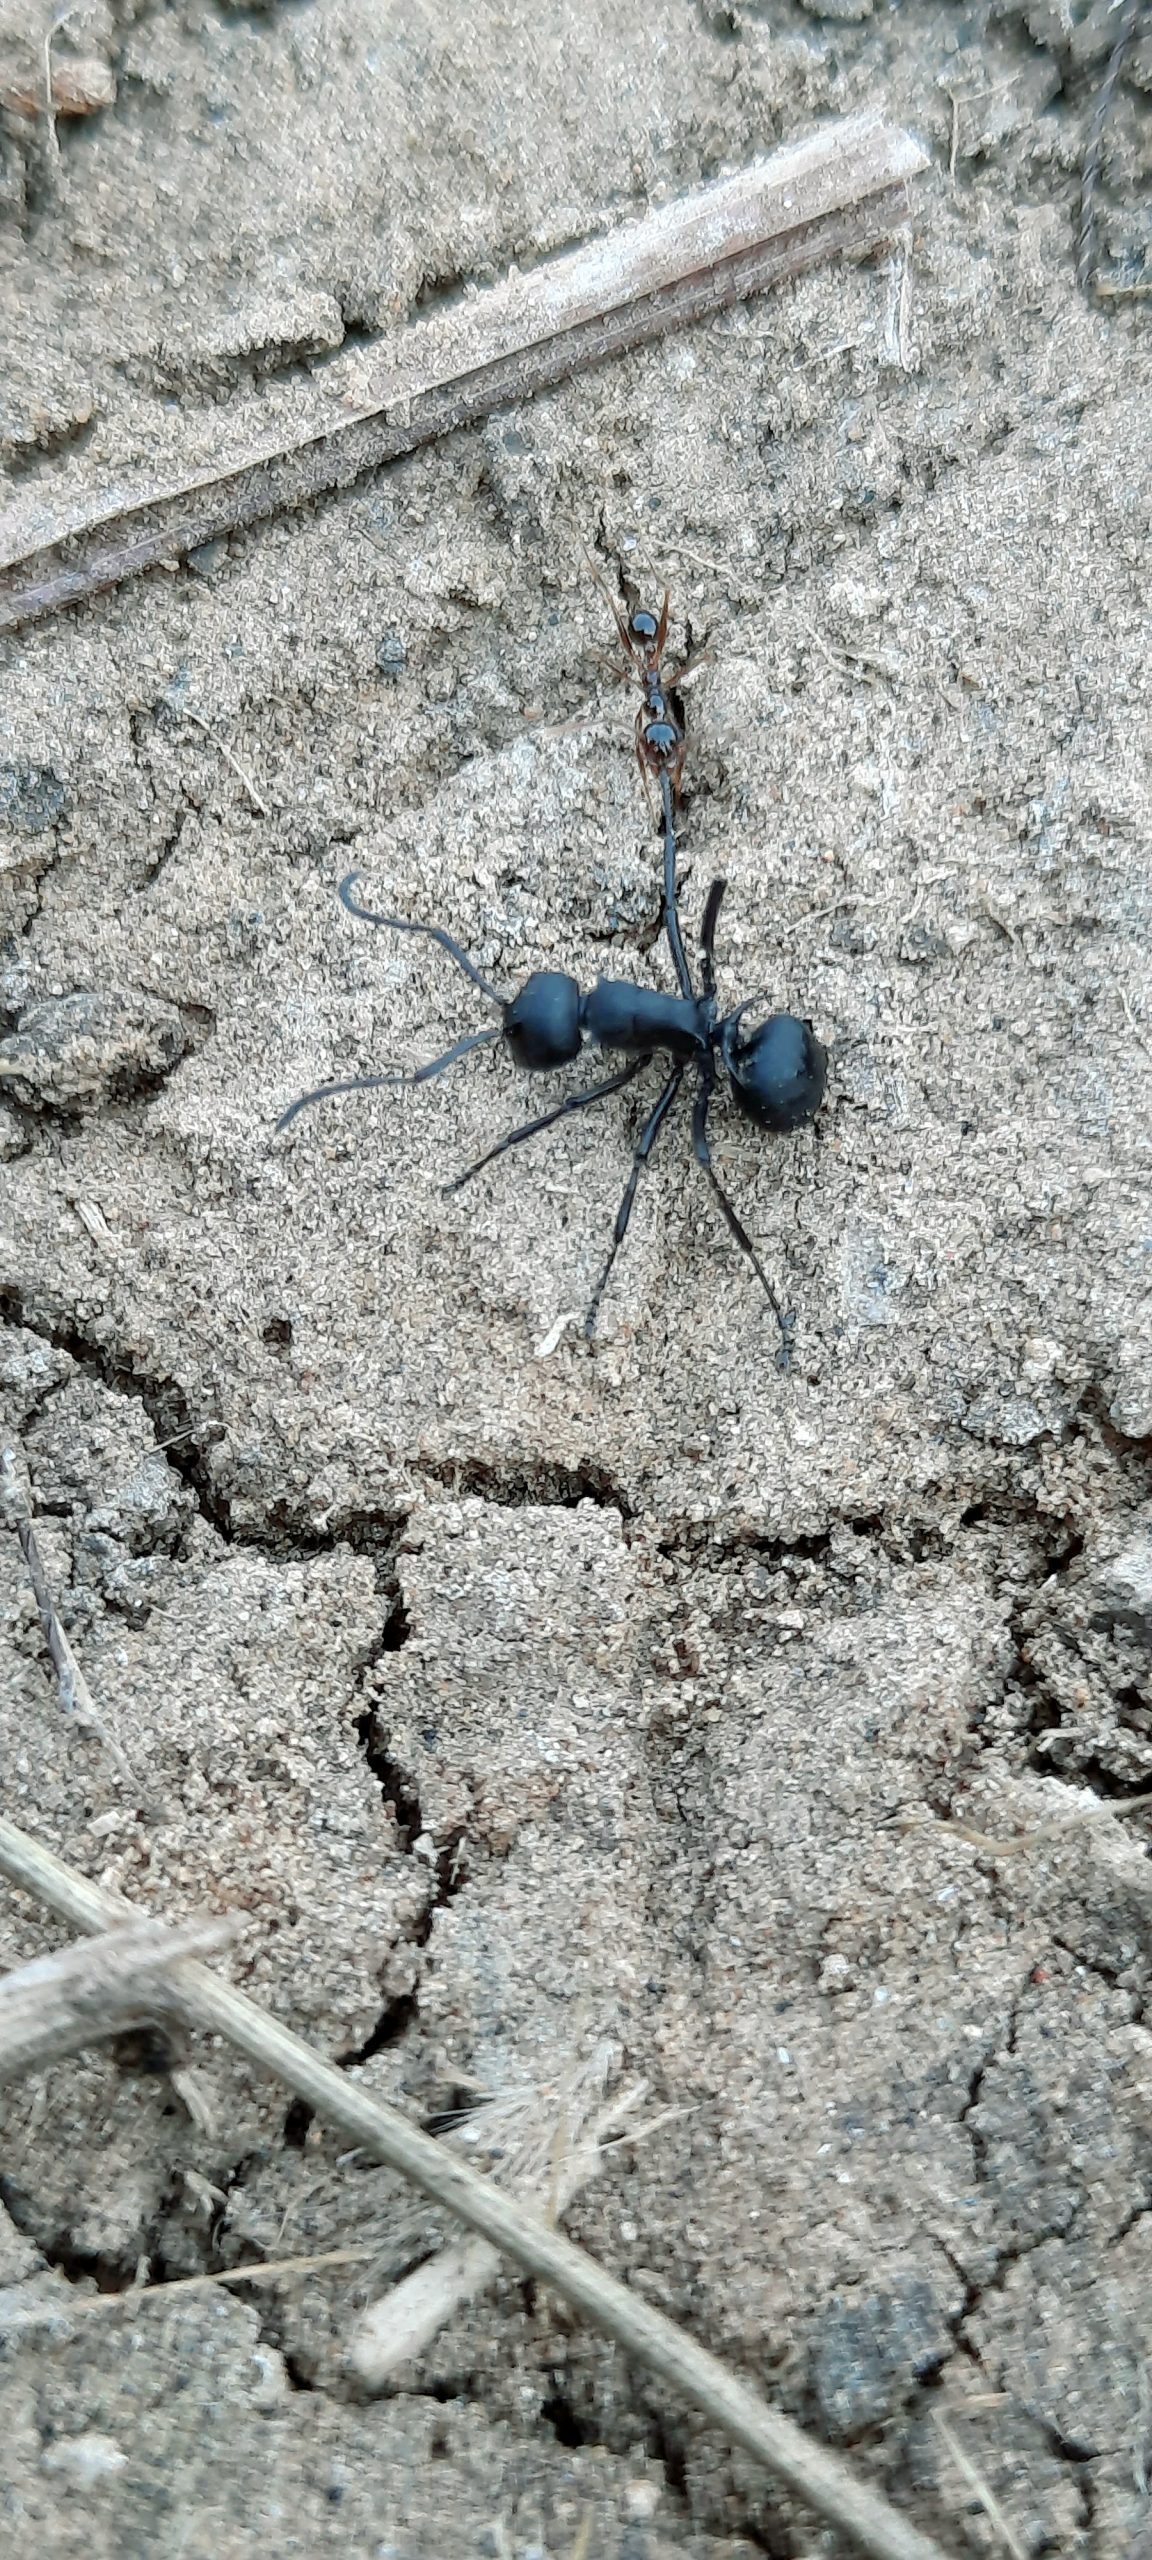 Black Carpenter ant